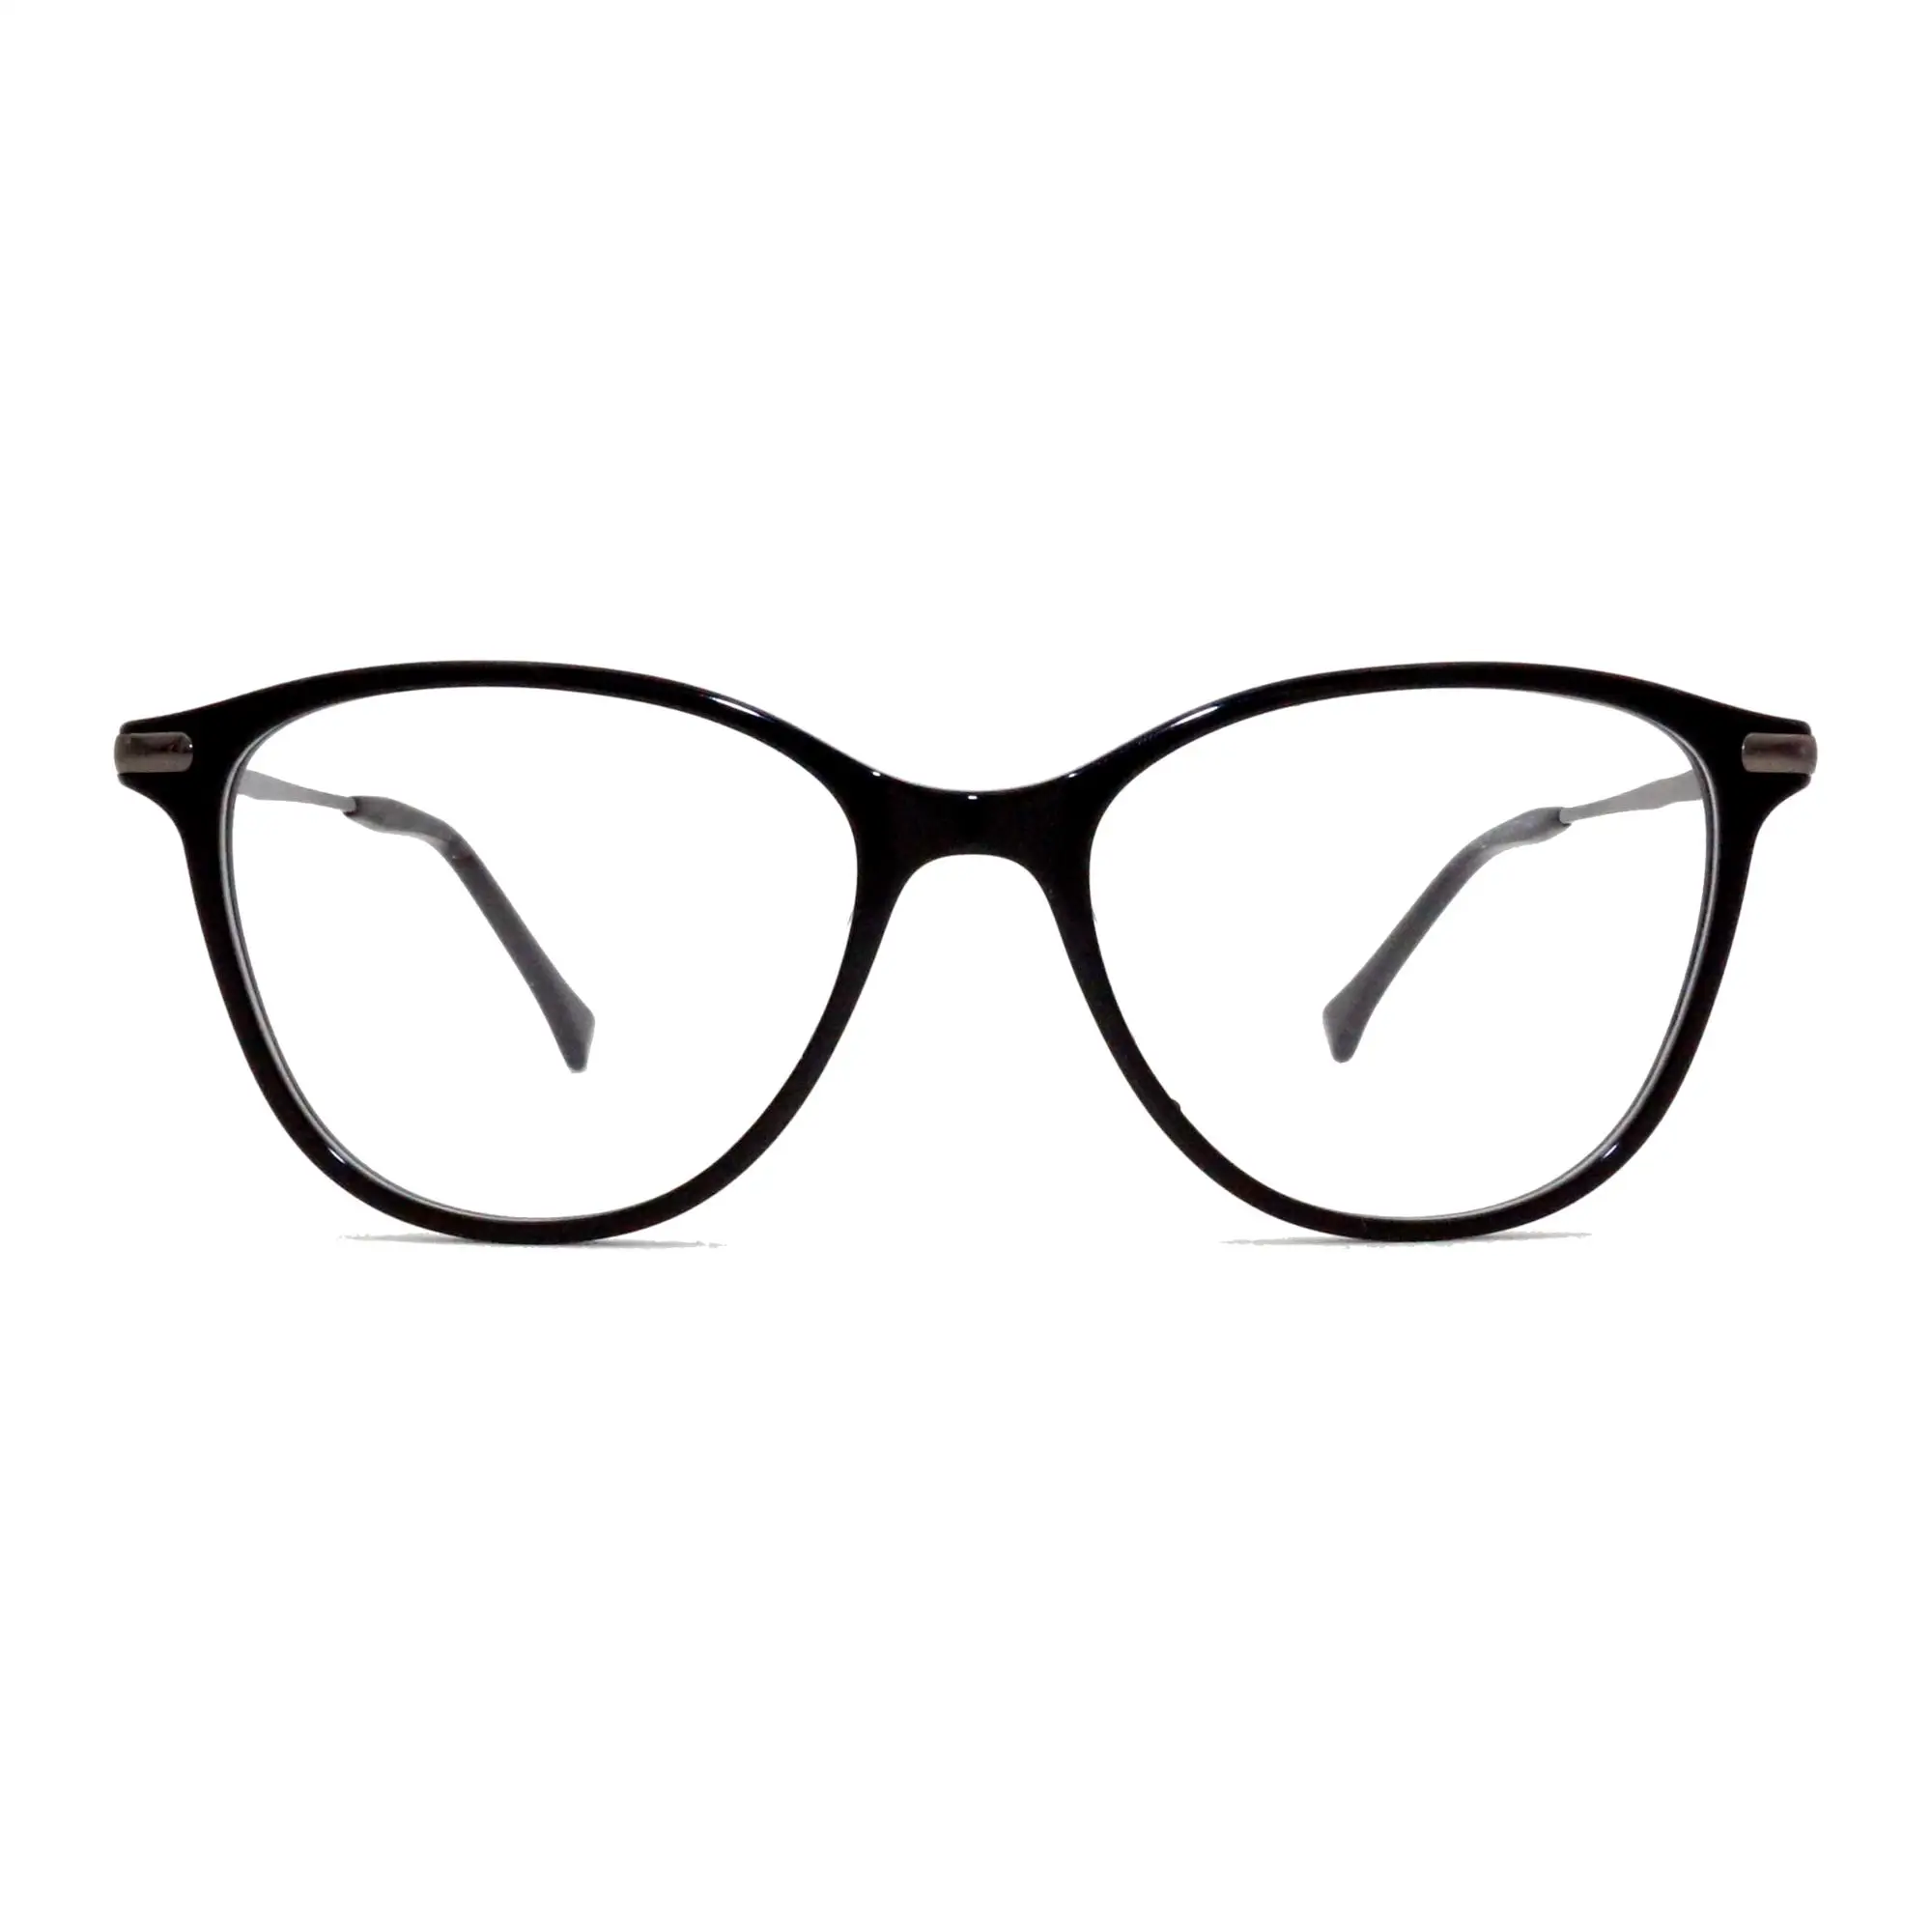 Italy Design Ce Reading Glasses Fancy Eyeglasses Frames New Model ...